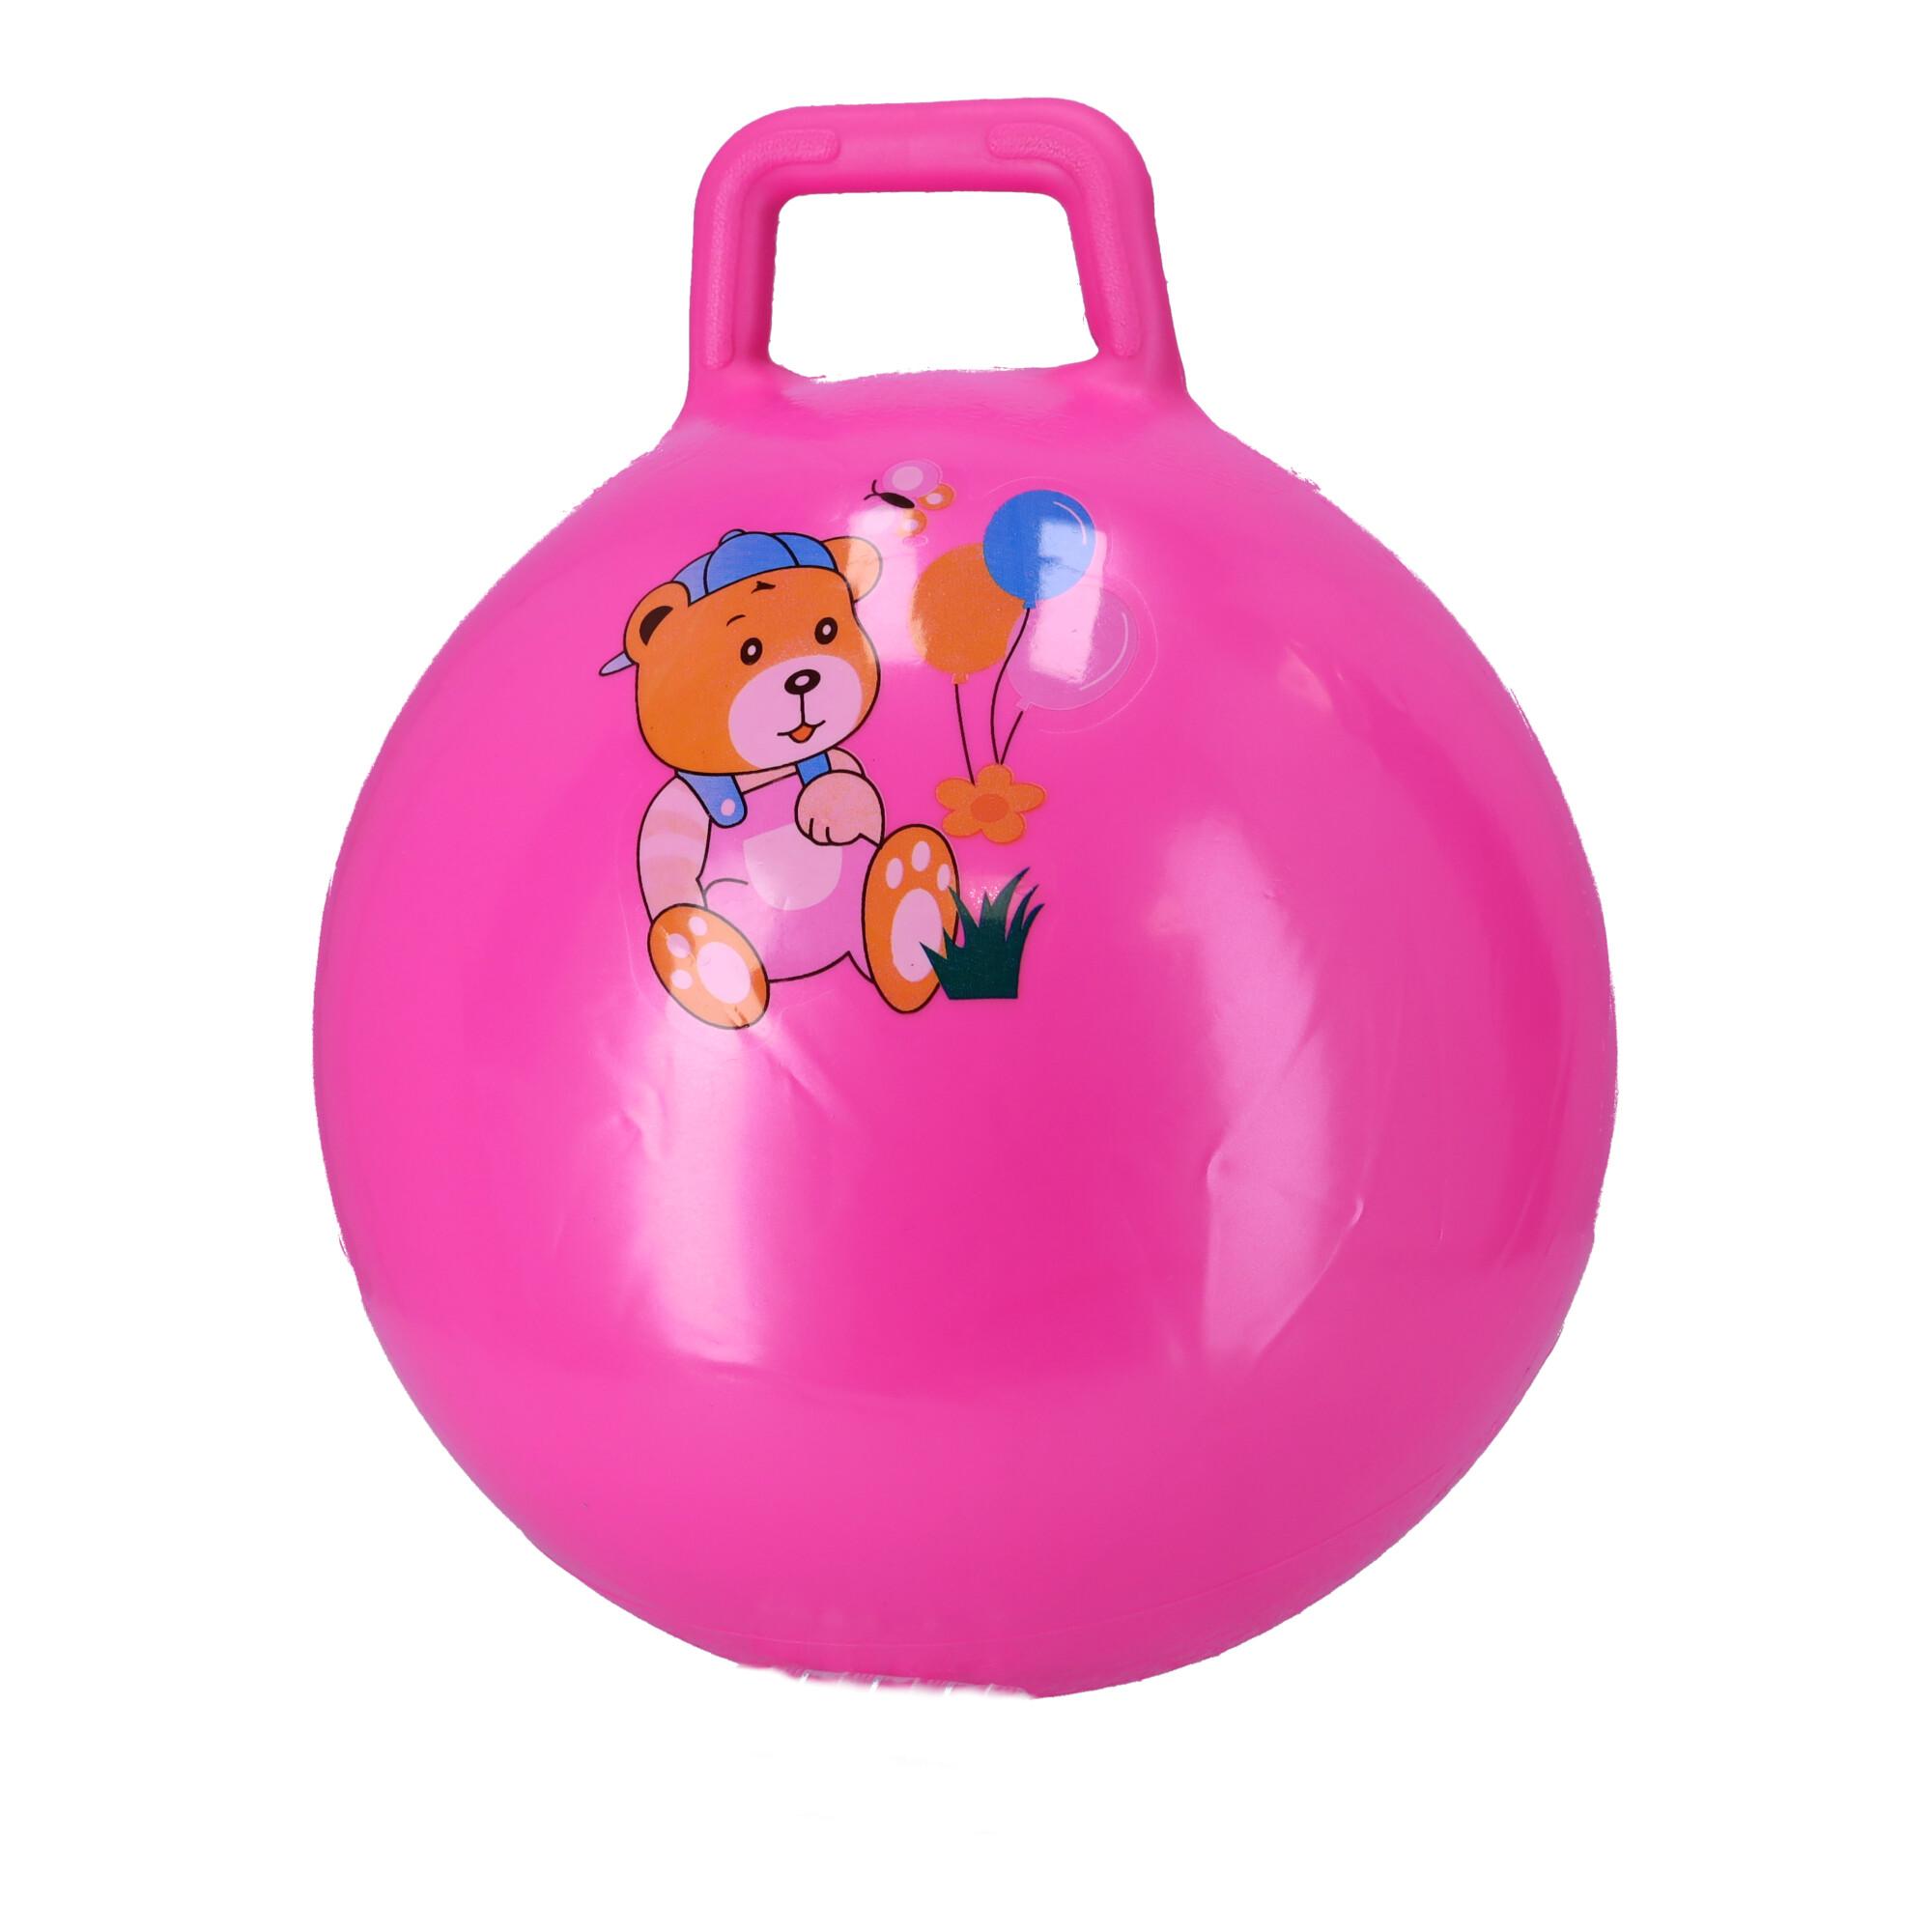 Piłka do skakania, skoczek dla dzieci z uchwytami - różowa